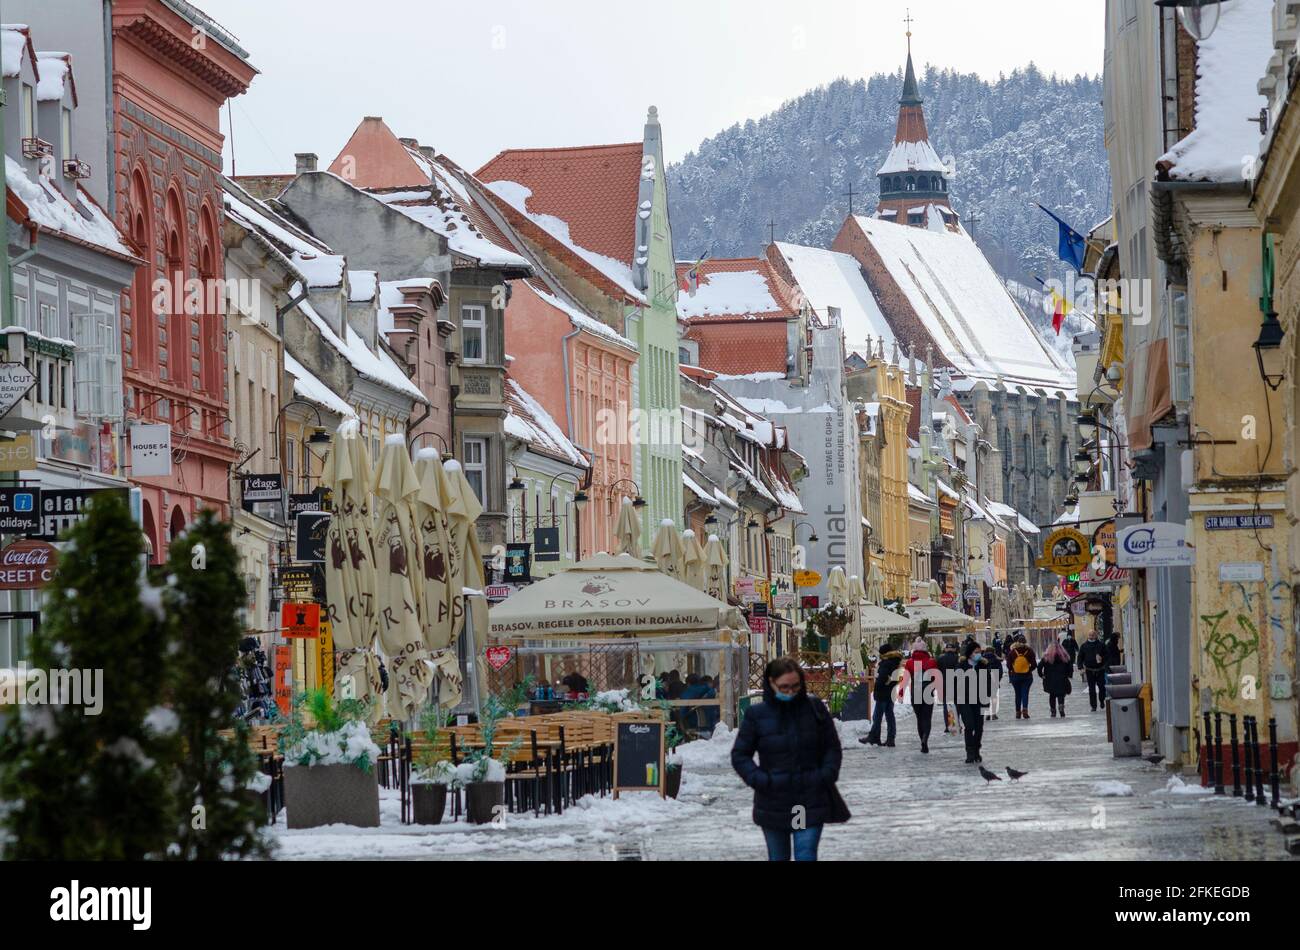 Gli amanti dello shopping tra la neve primaverile in strada Republicii nel centro storico di Brasov Romania. La famosa Chiesa Nera è prominente sullo sfondo - pH Foto Stock